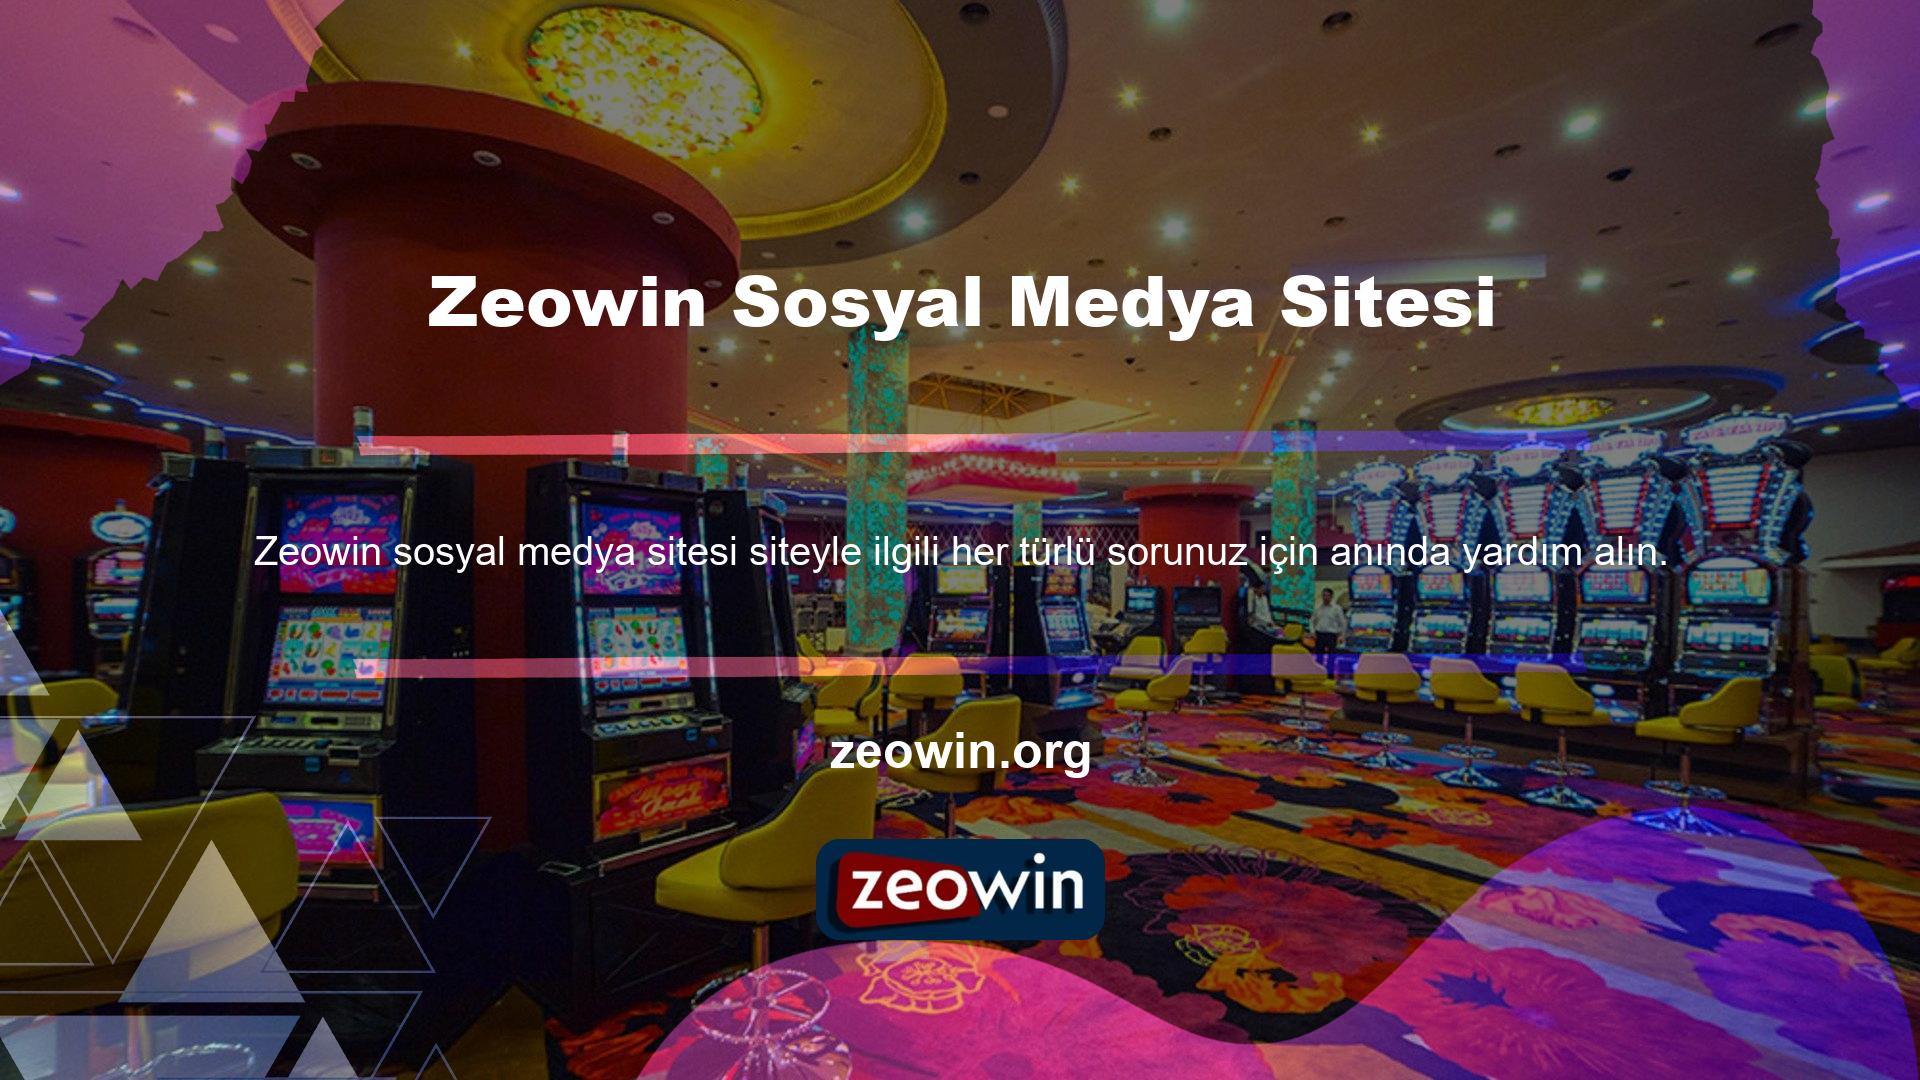 Sosyal medya adresinizi kullanarak mobil cihazınızdan Zeowin sitesine giriş yapmanız da mümkündür